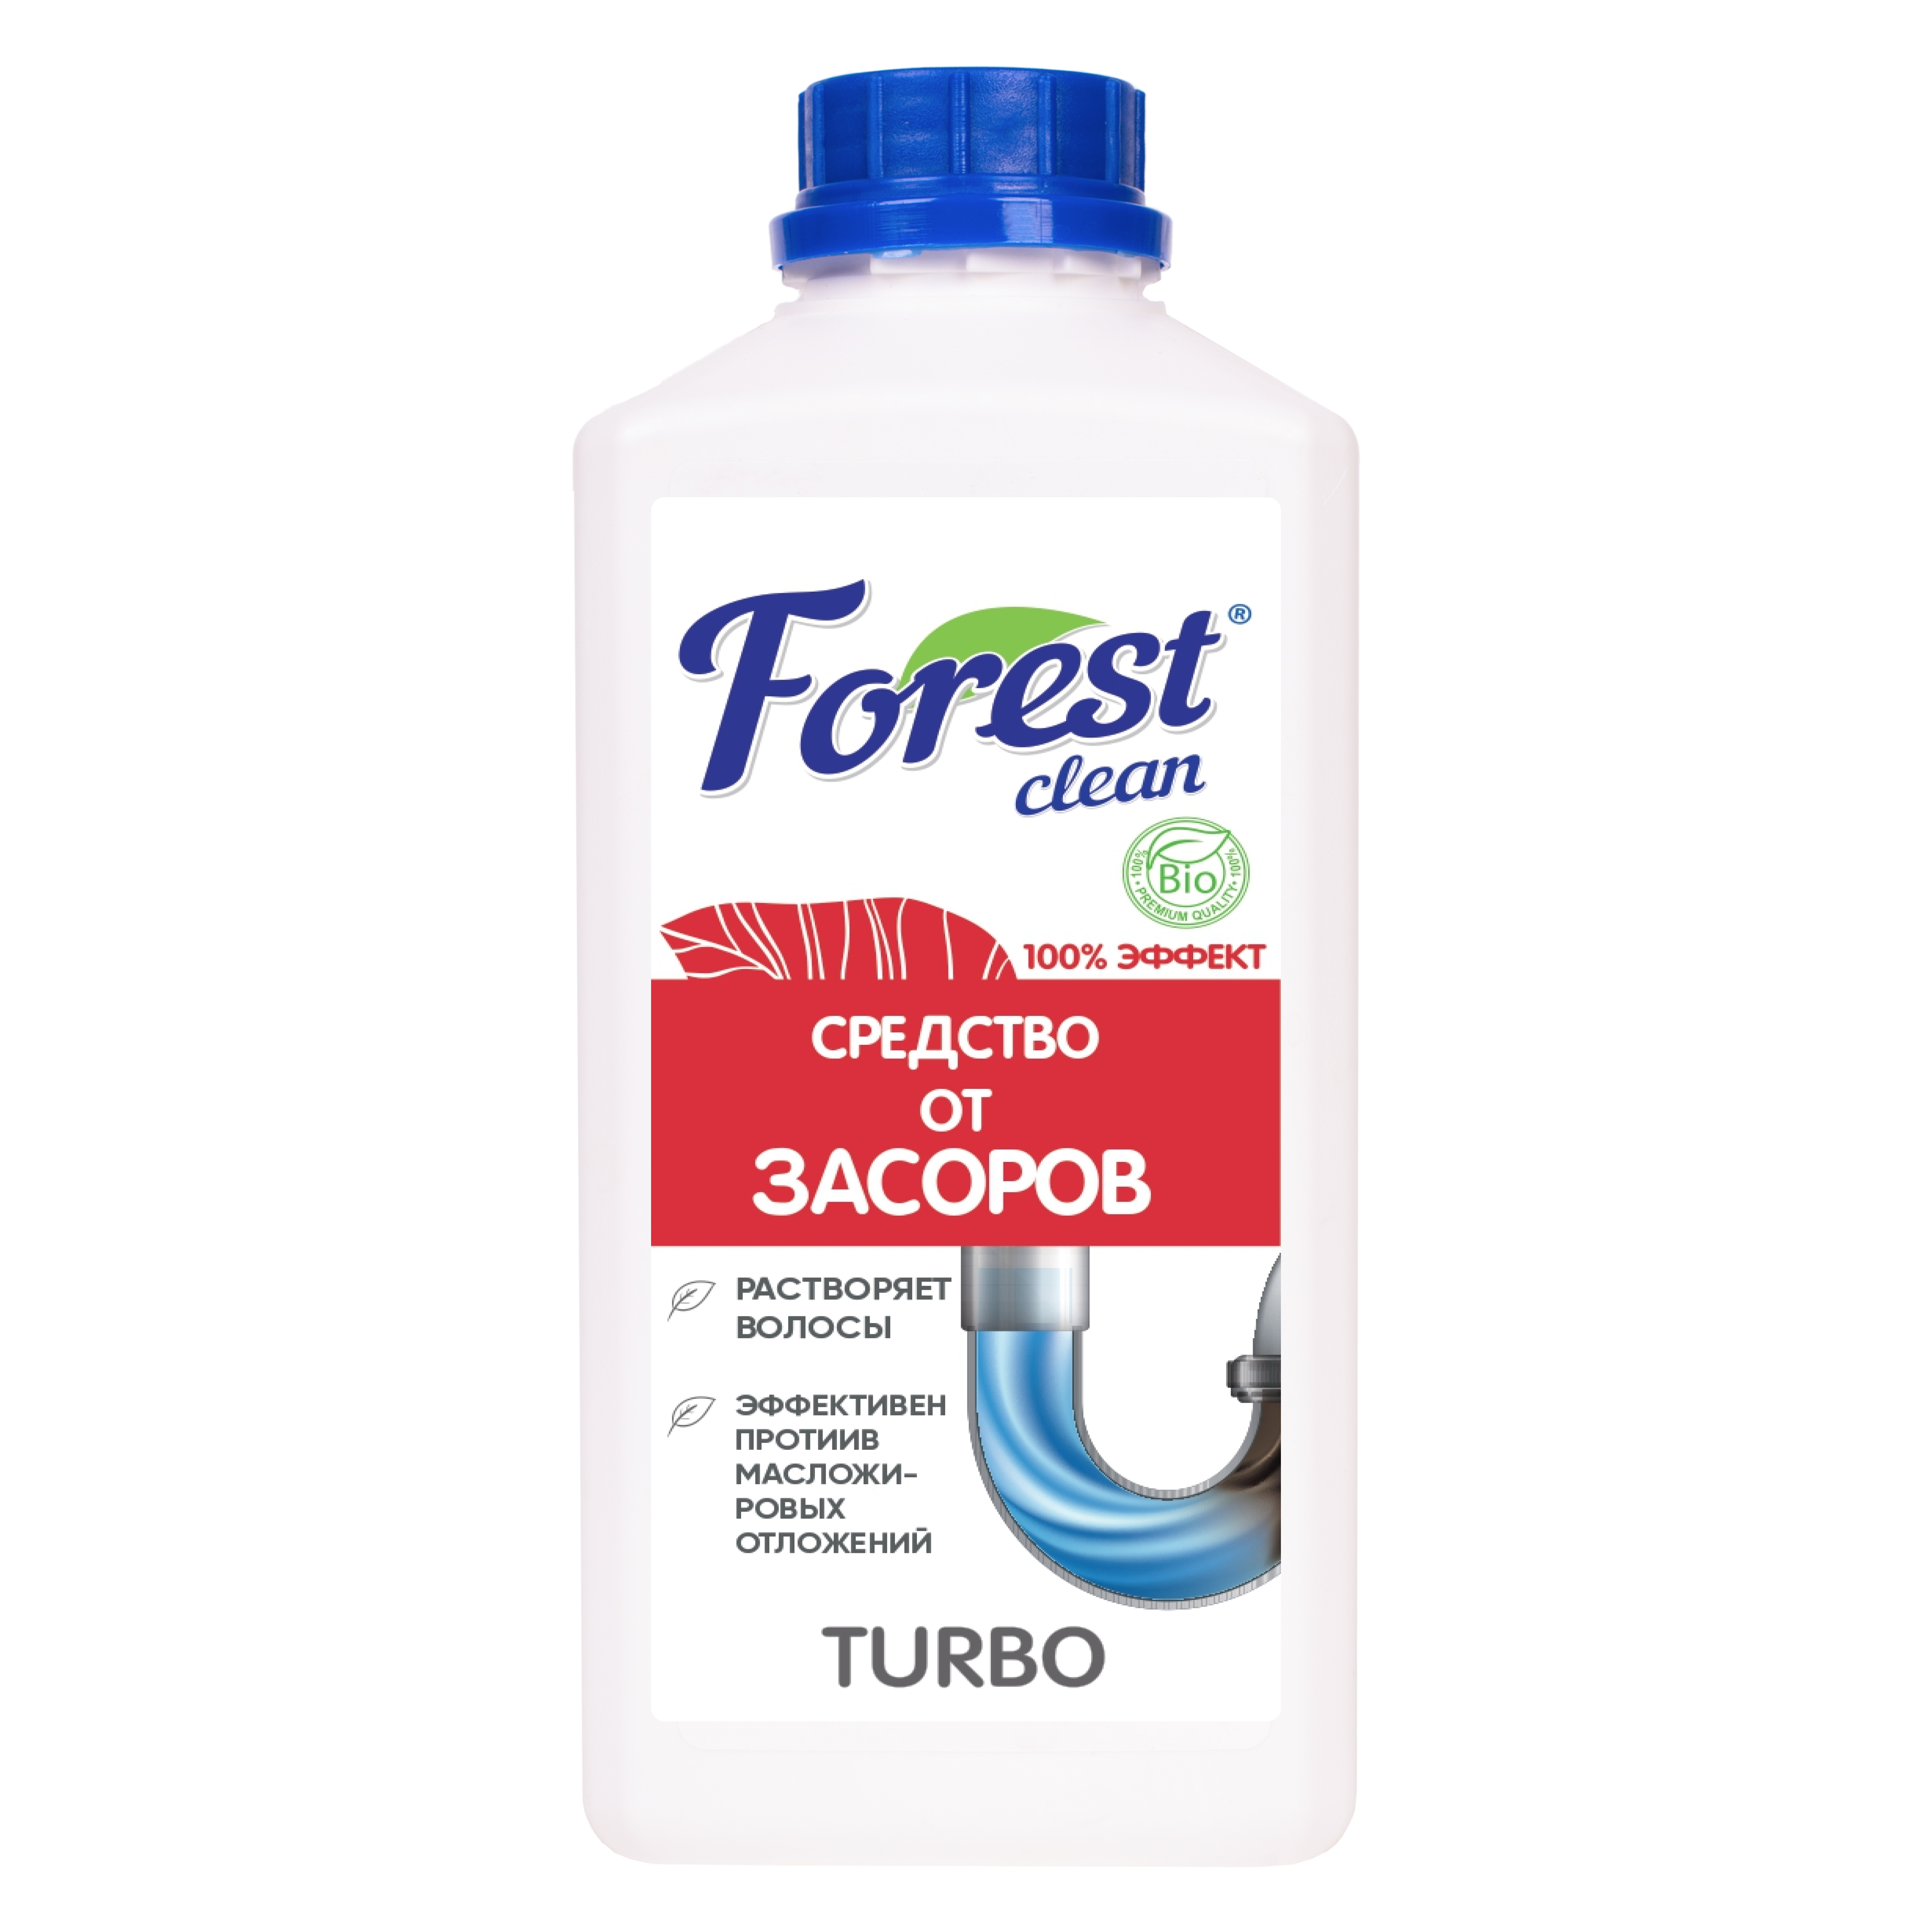 Forest Clean гель для устранения засоров "TURBO" 1 л.